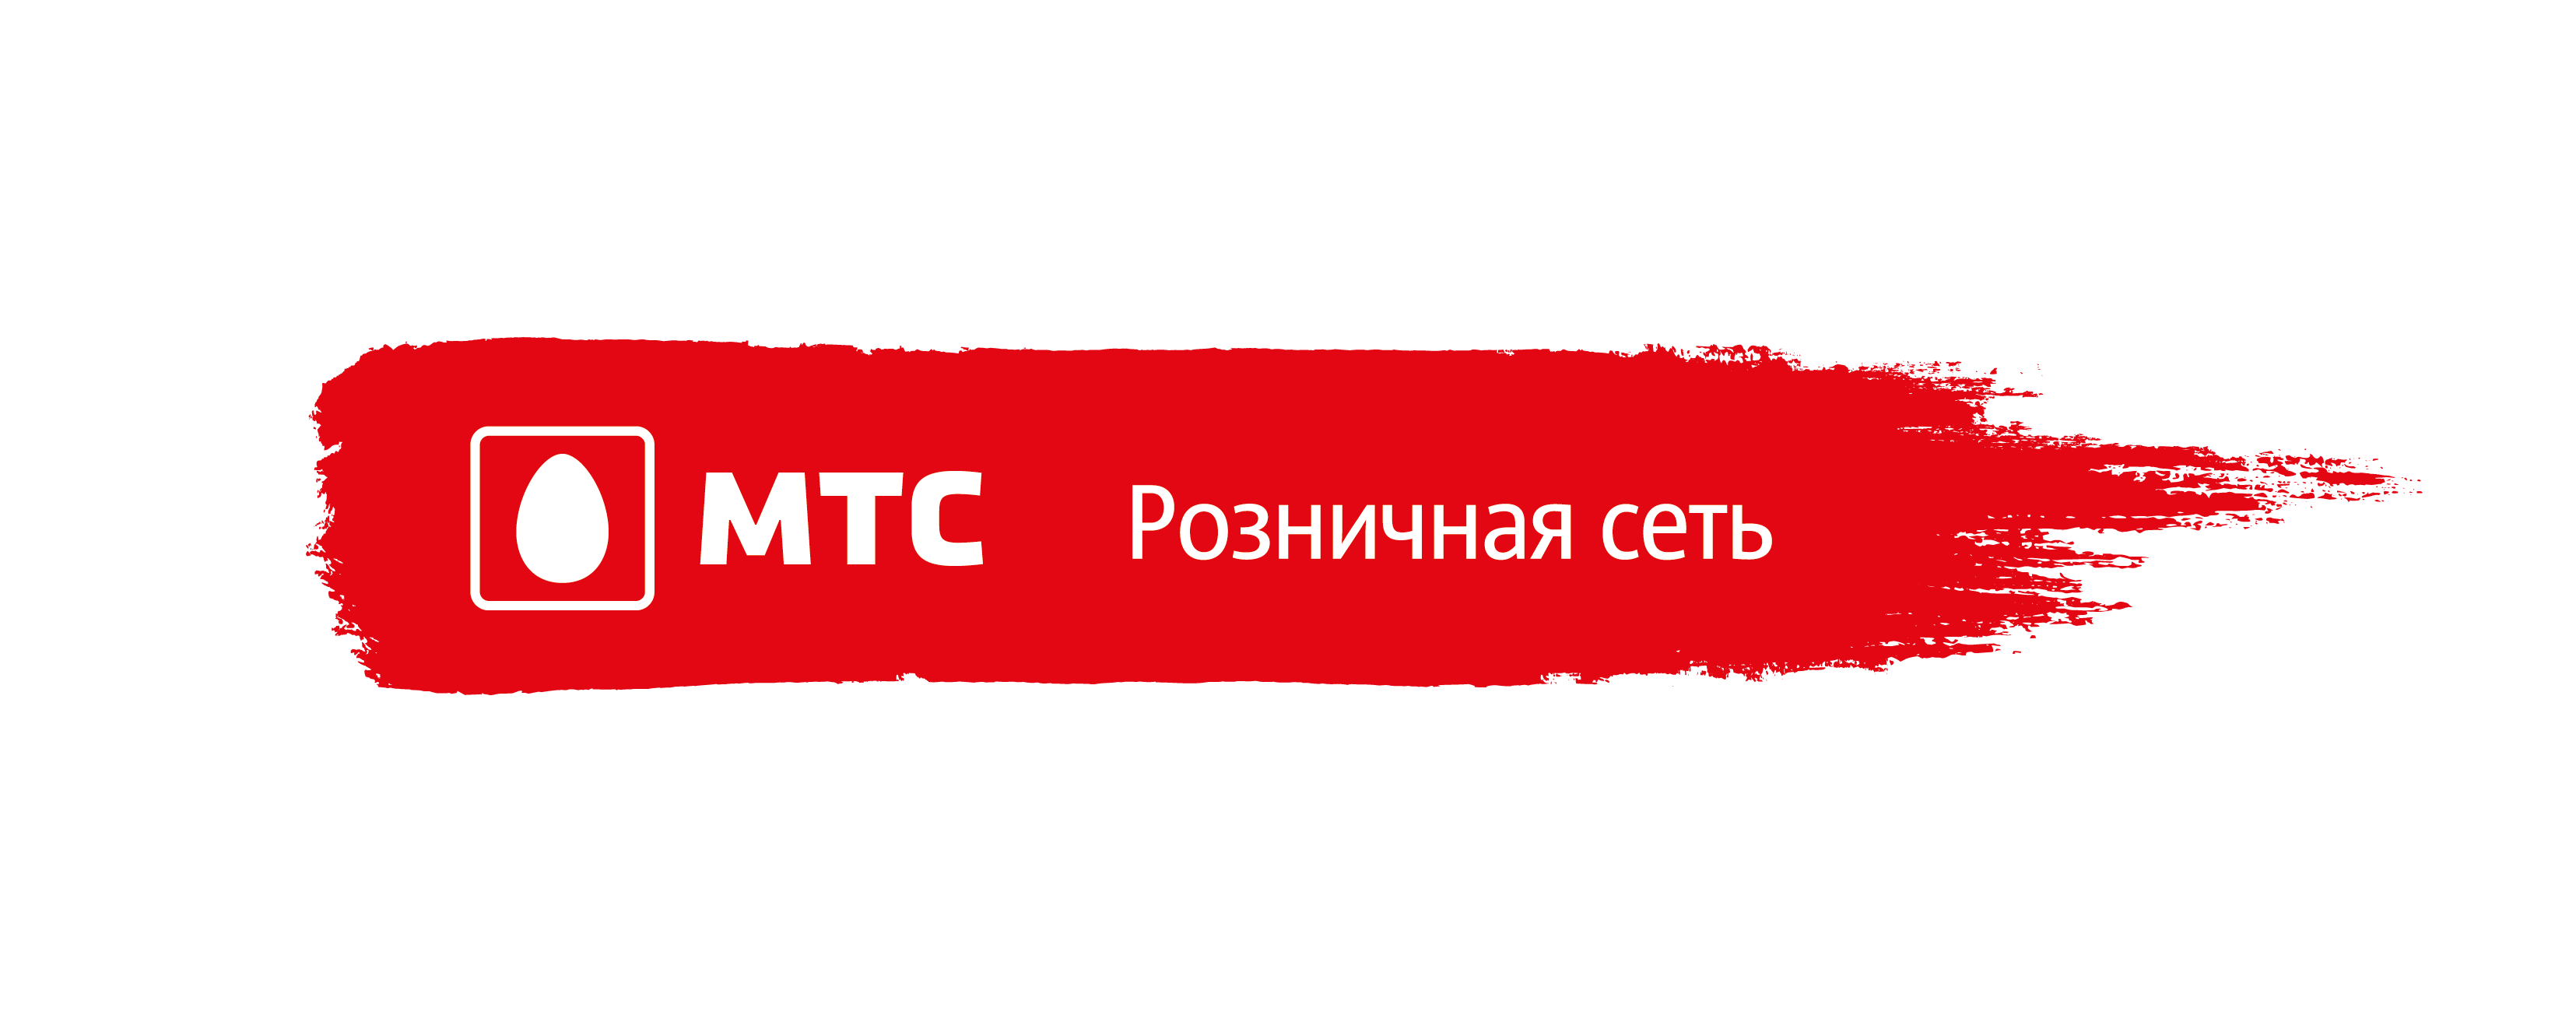 МТС Розничная сеть - РТК - Русская Телефонная Компания